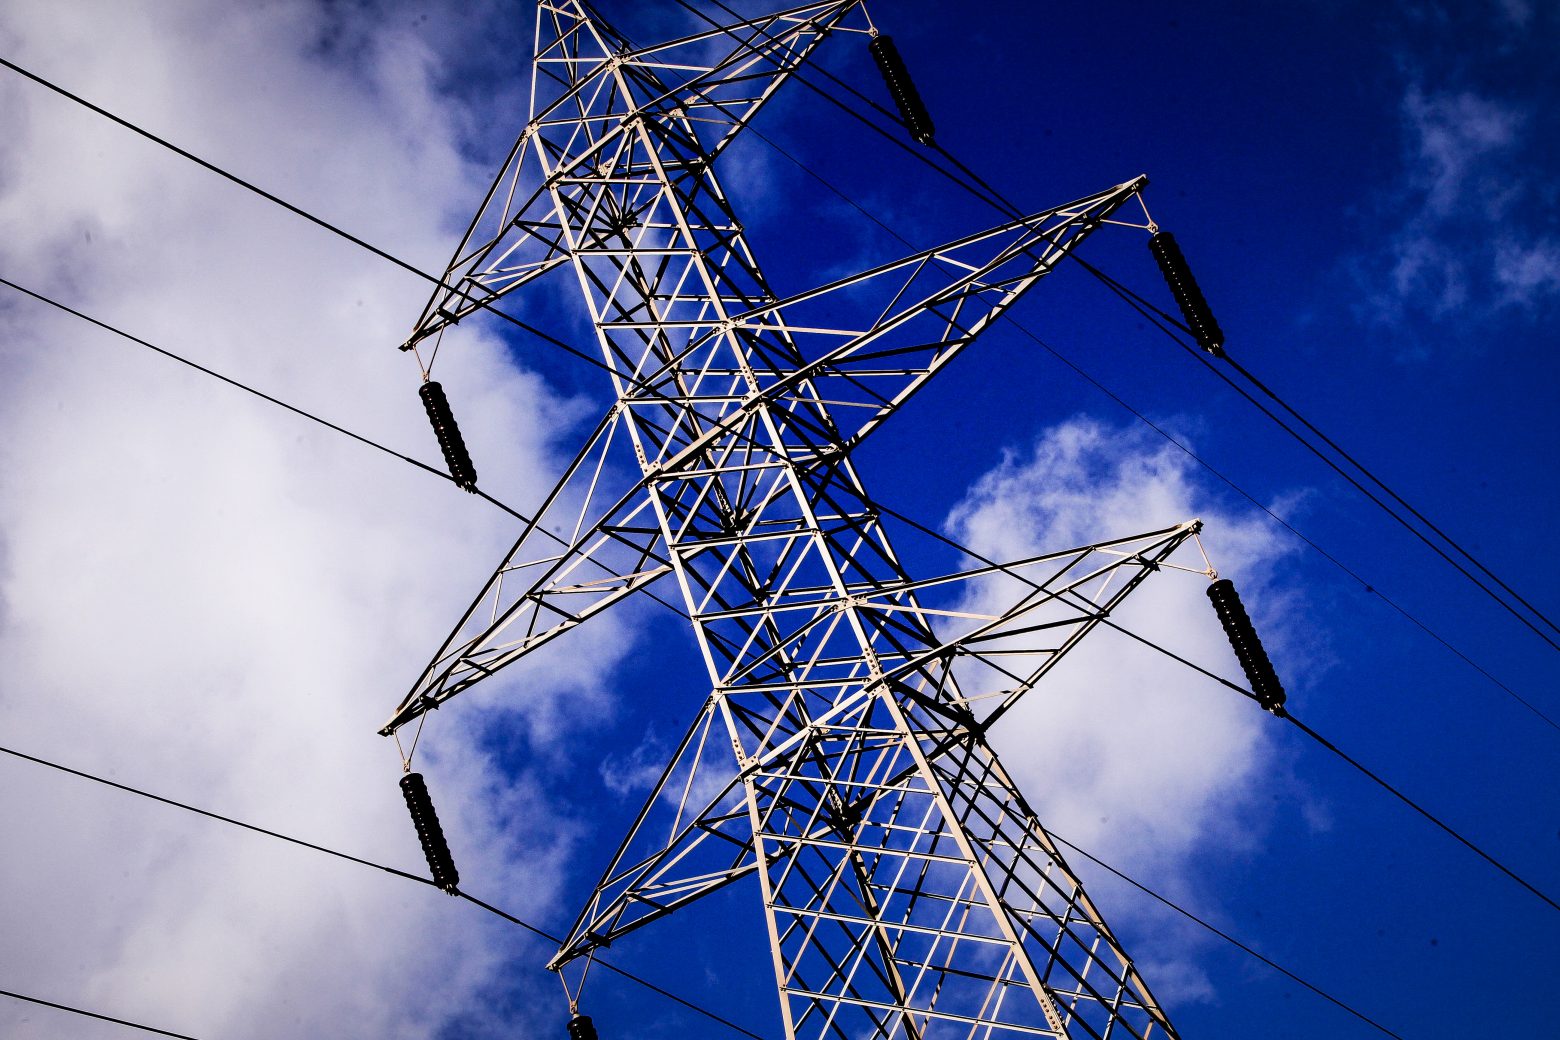 ΑΠΕ: 400 εκατ. ευρώ για αναβάθμιση ηλεκτρικών δικτύων και αύξηση ισχύος